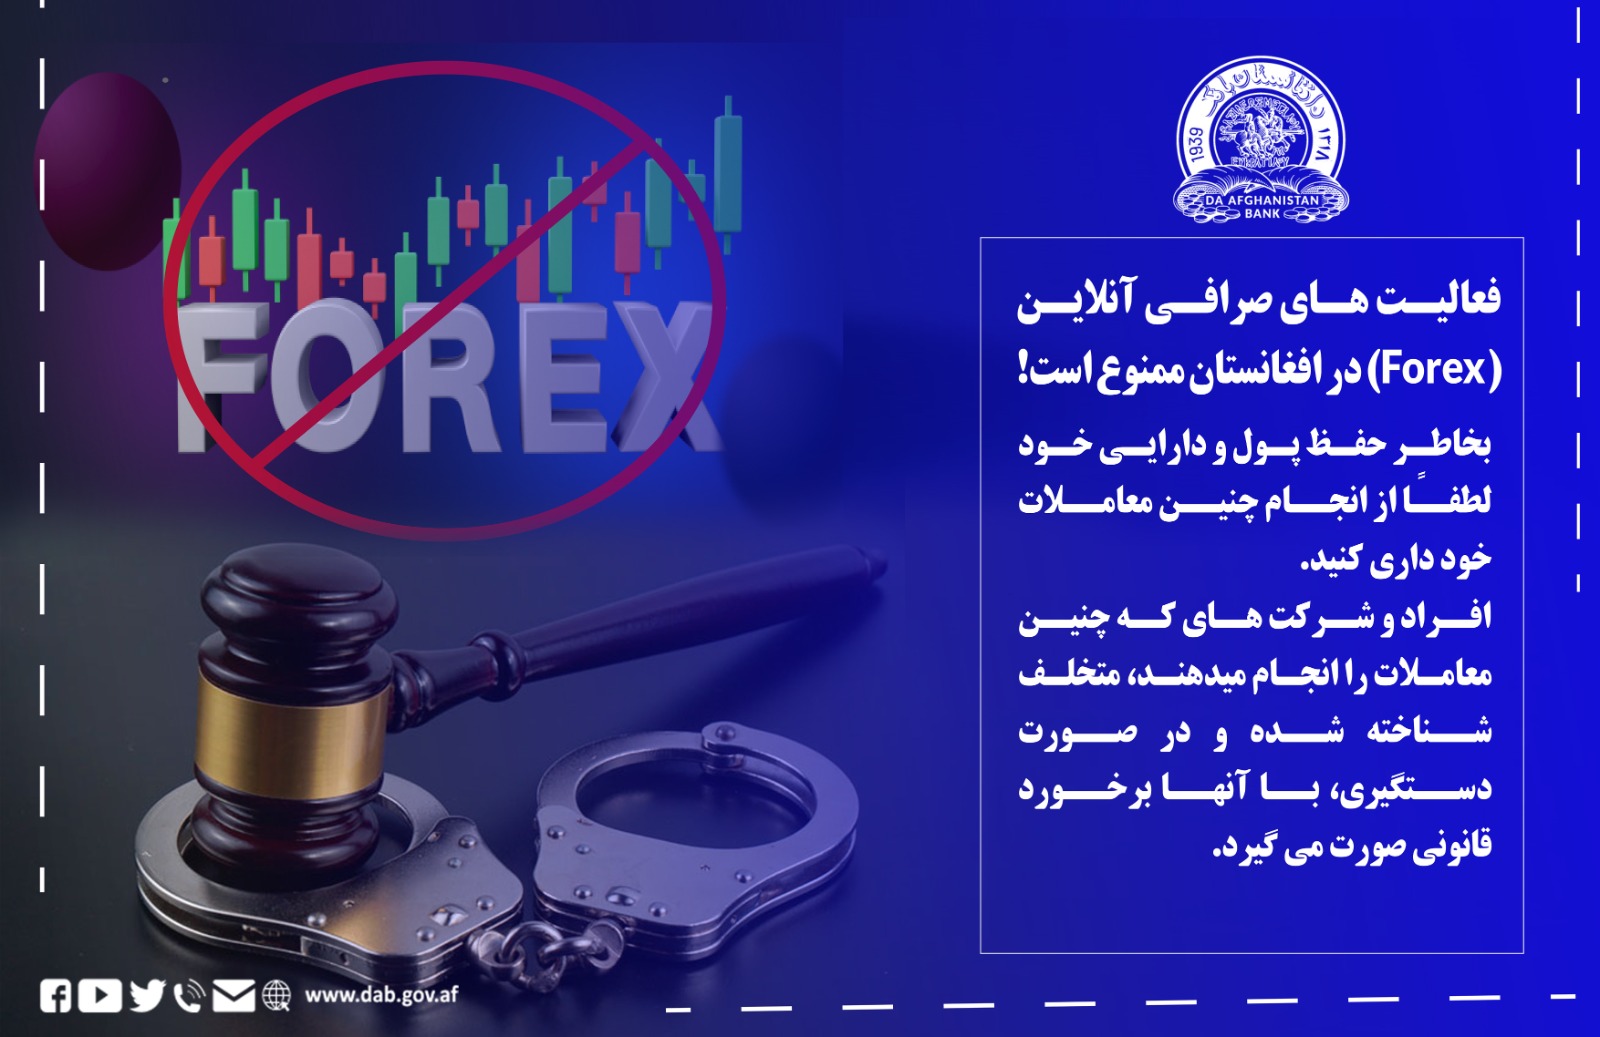 فعالیت های صرافی آنلاین (Forex) در افغانستان ممنوع است!